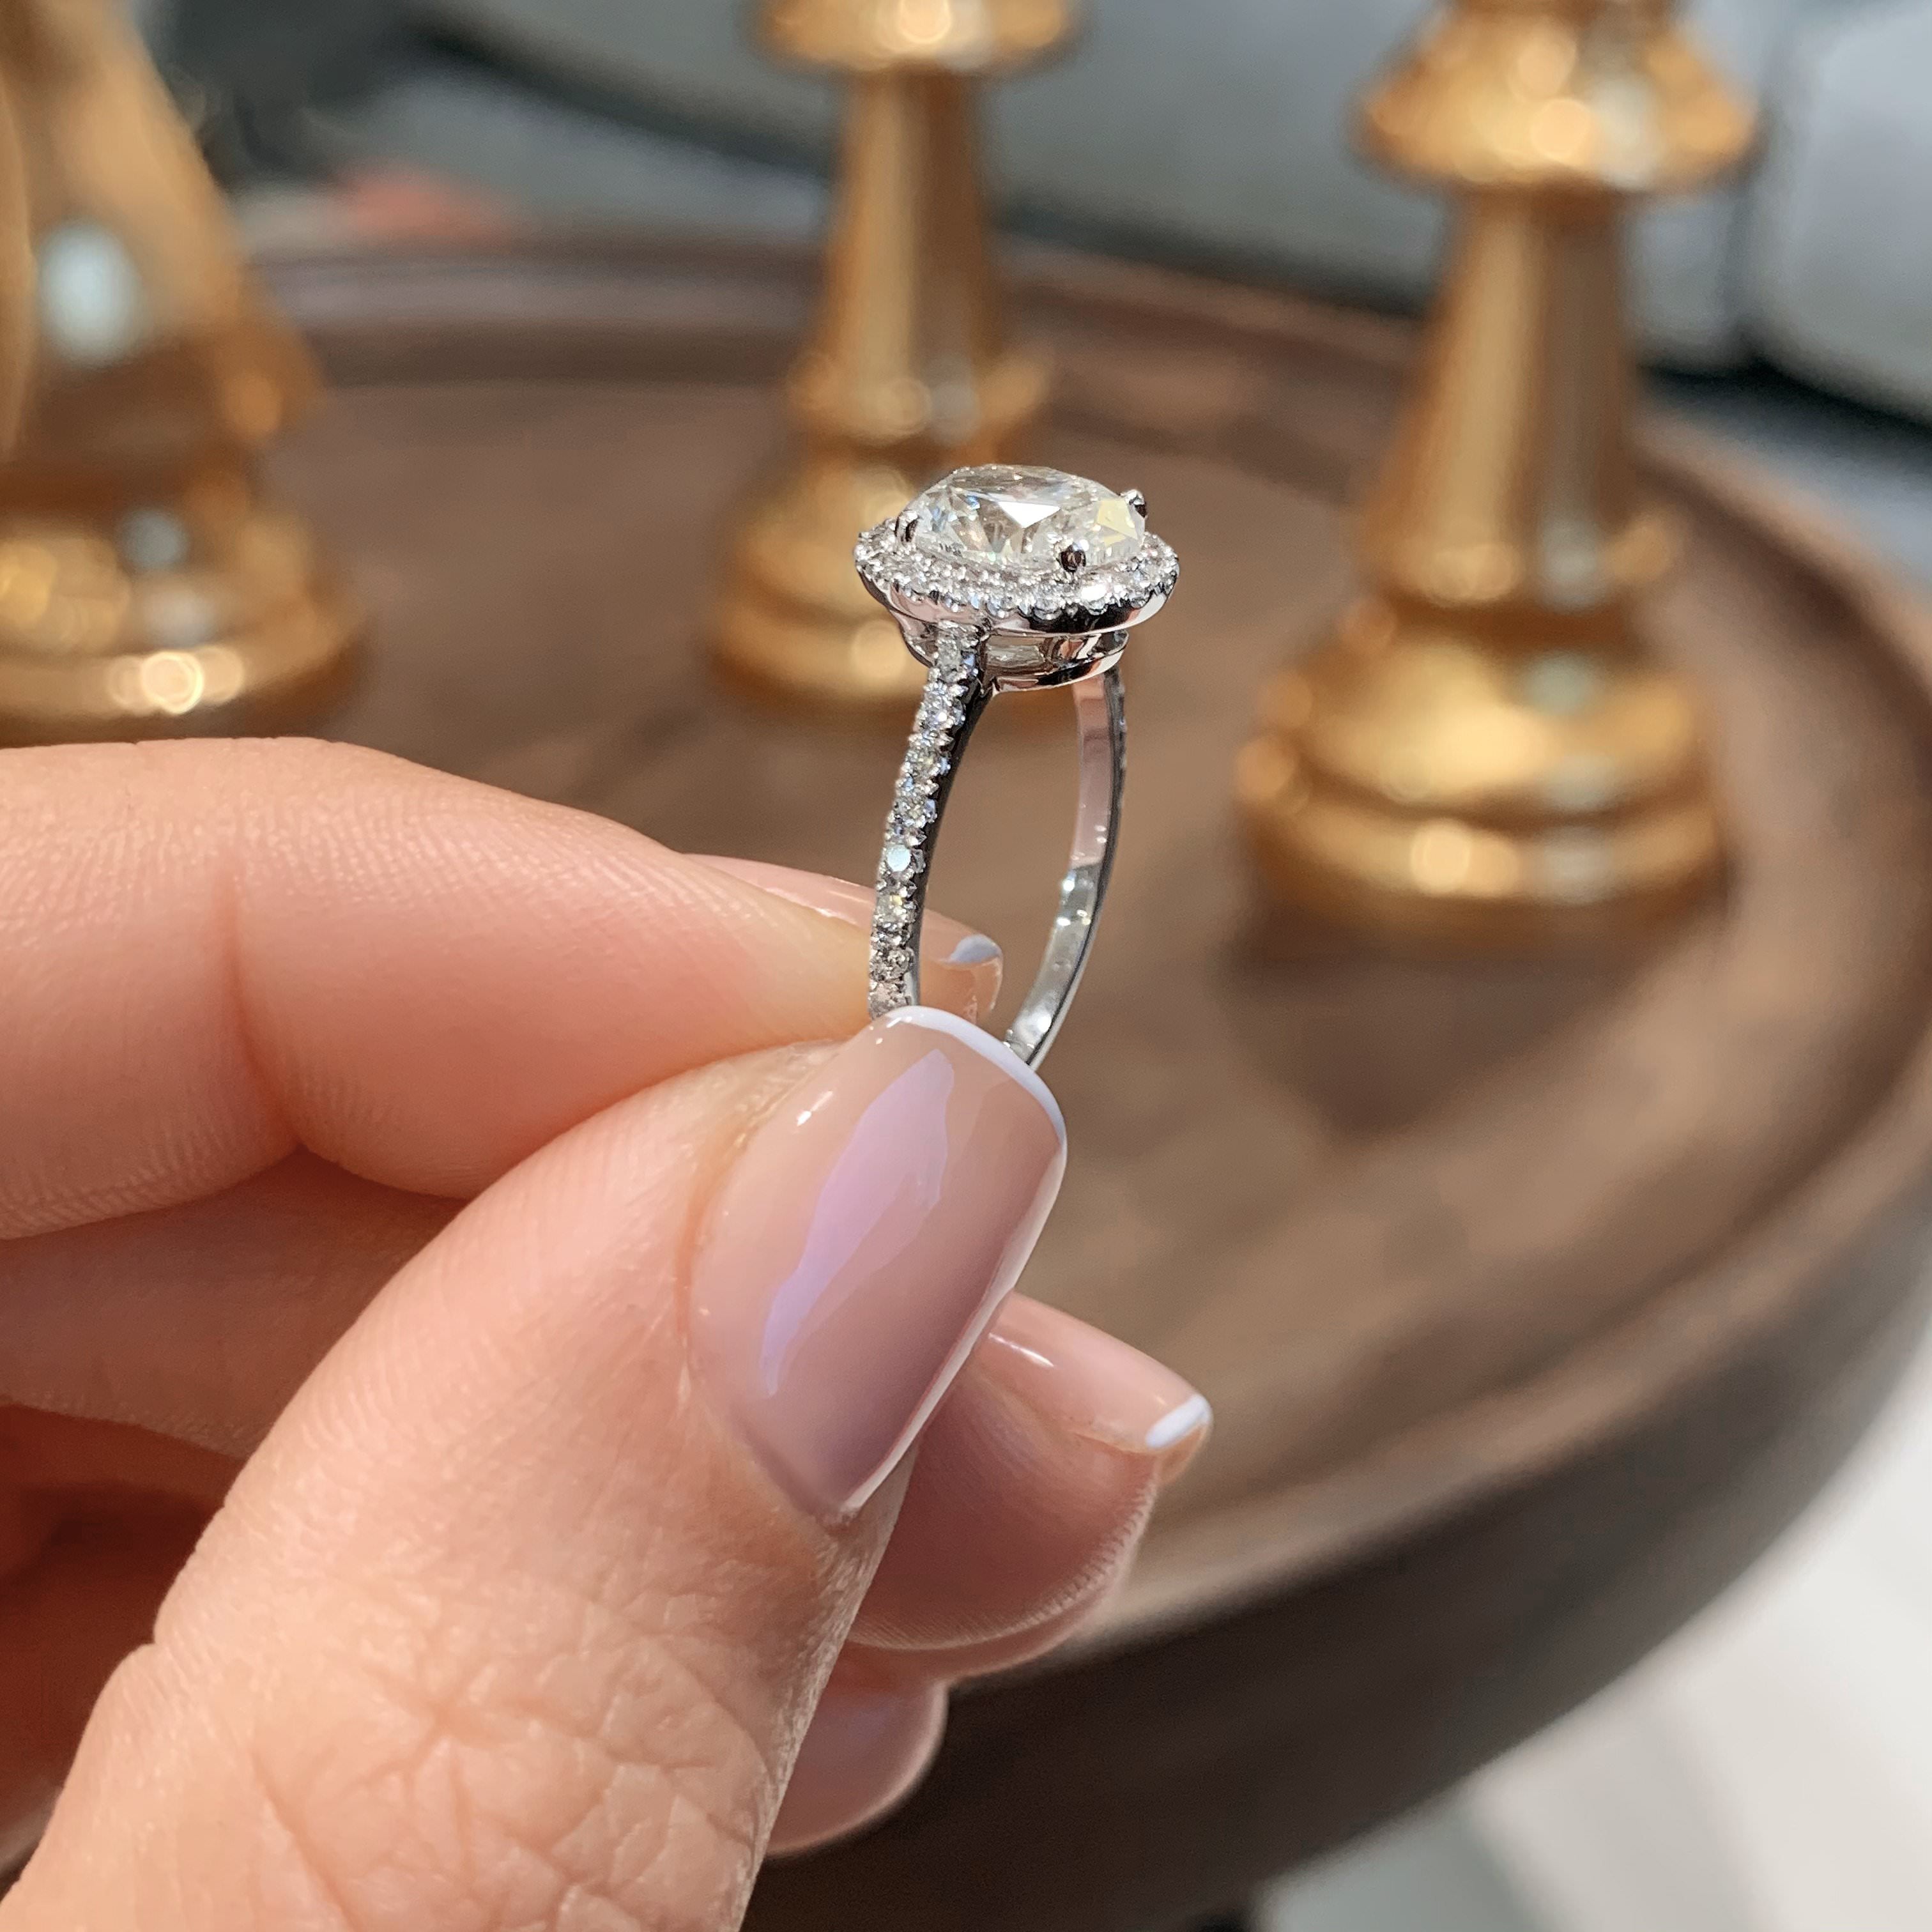 Maria Lab Grown Diamond Ring   (2 Carat) -14K White Gold